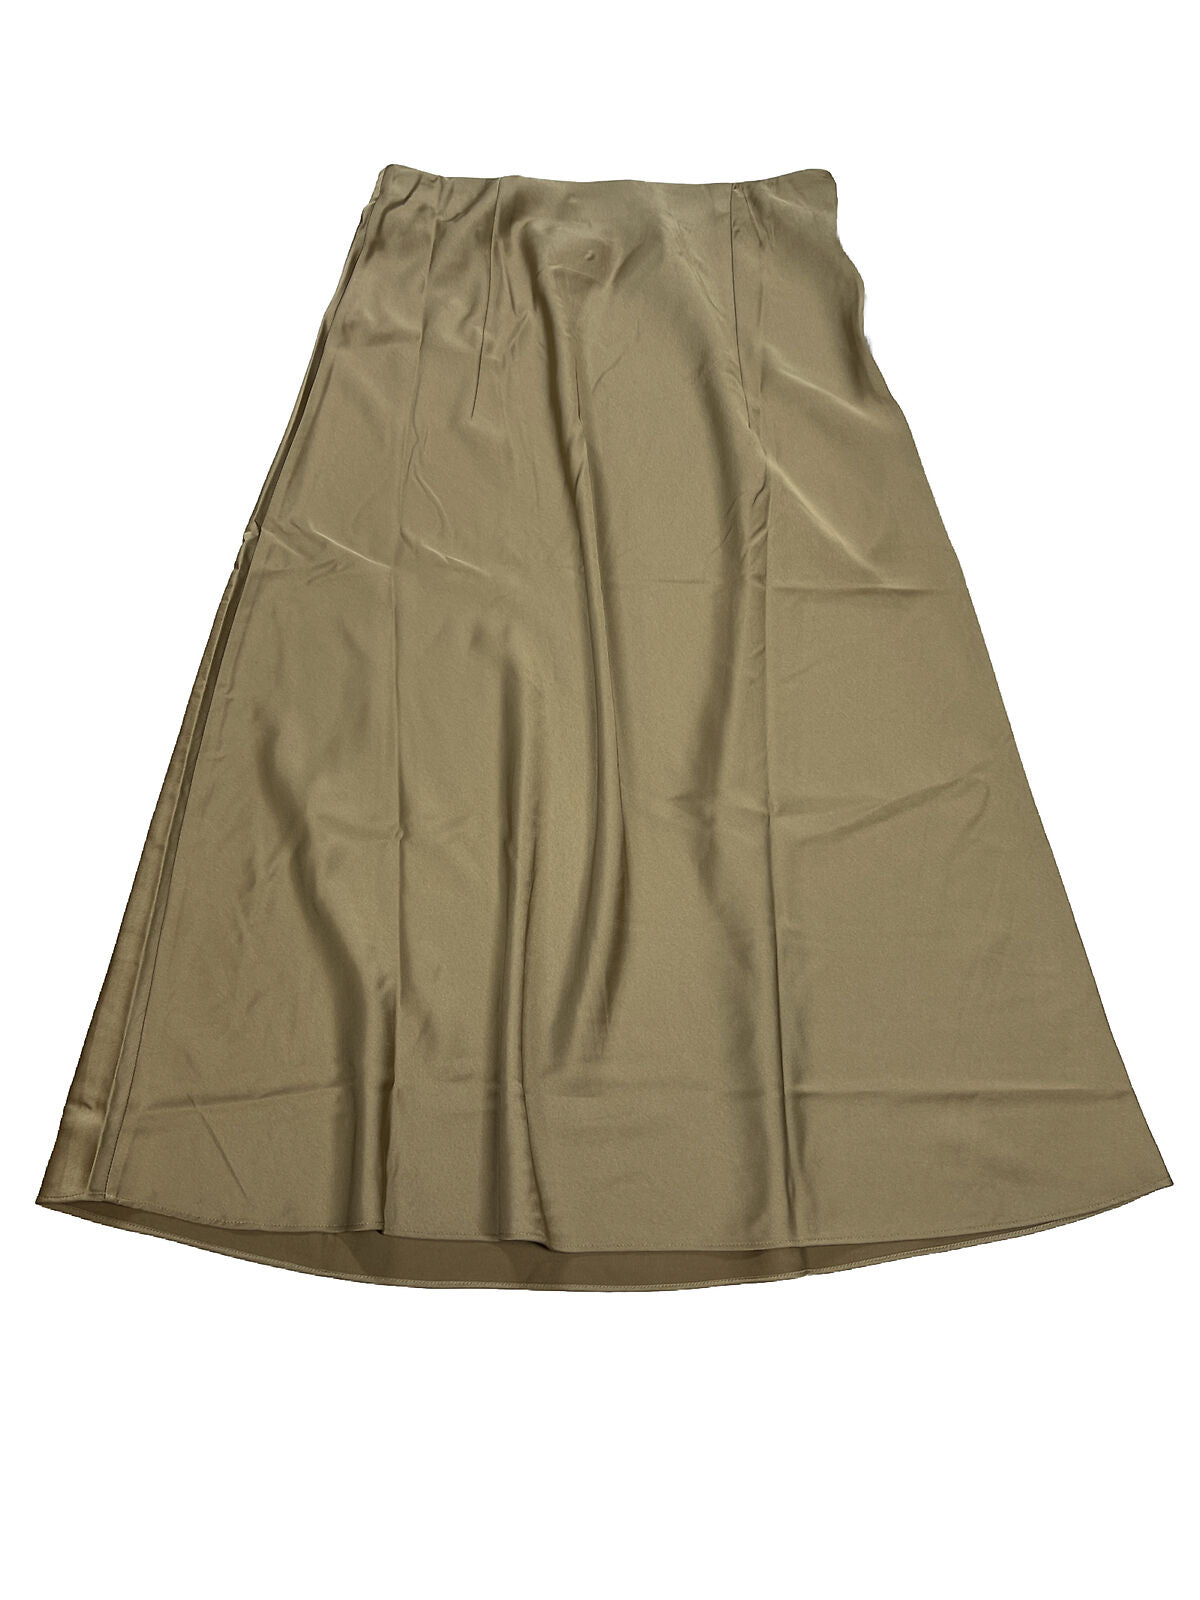 J. Crew Women's Brown Polyester Sateen Long Skirt - XS